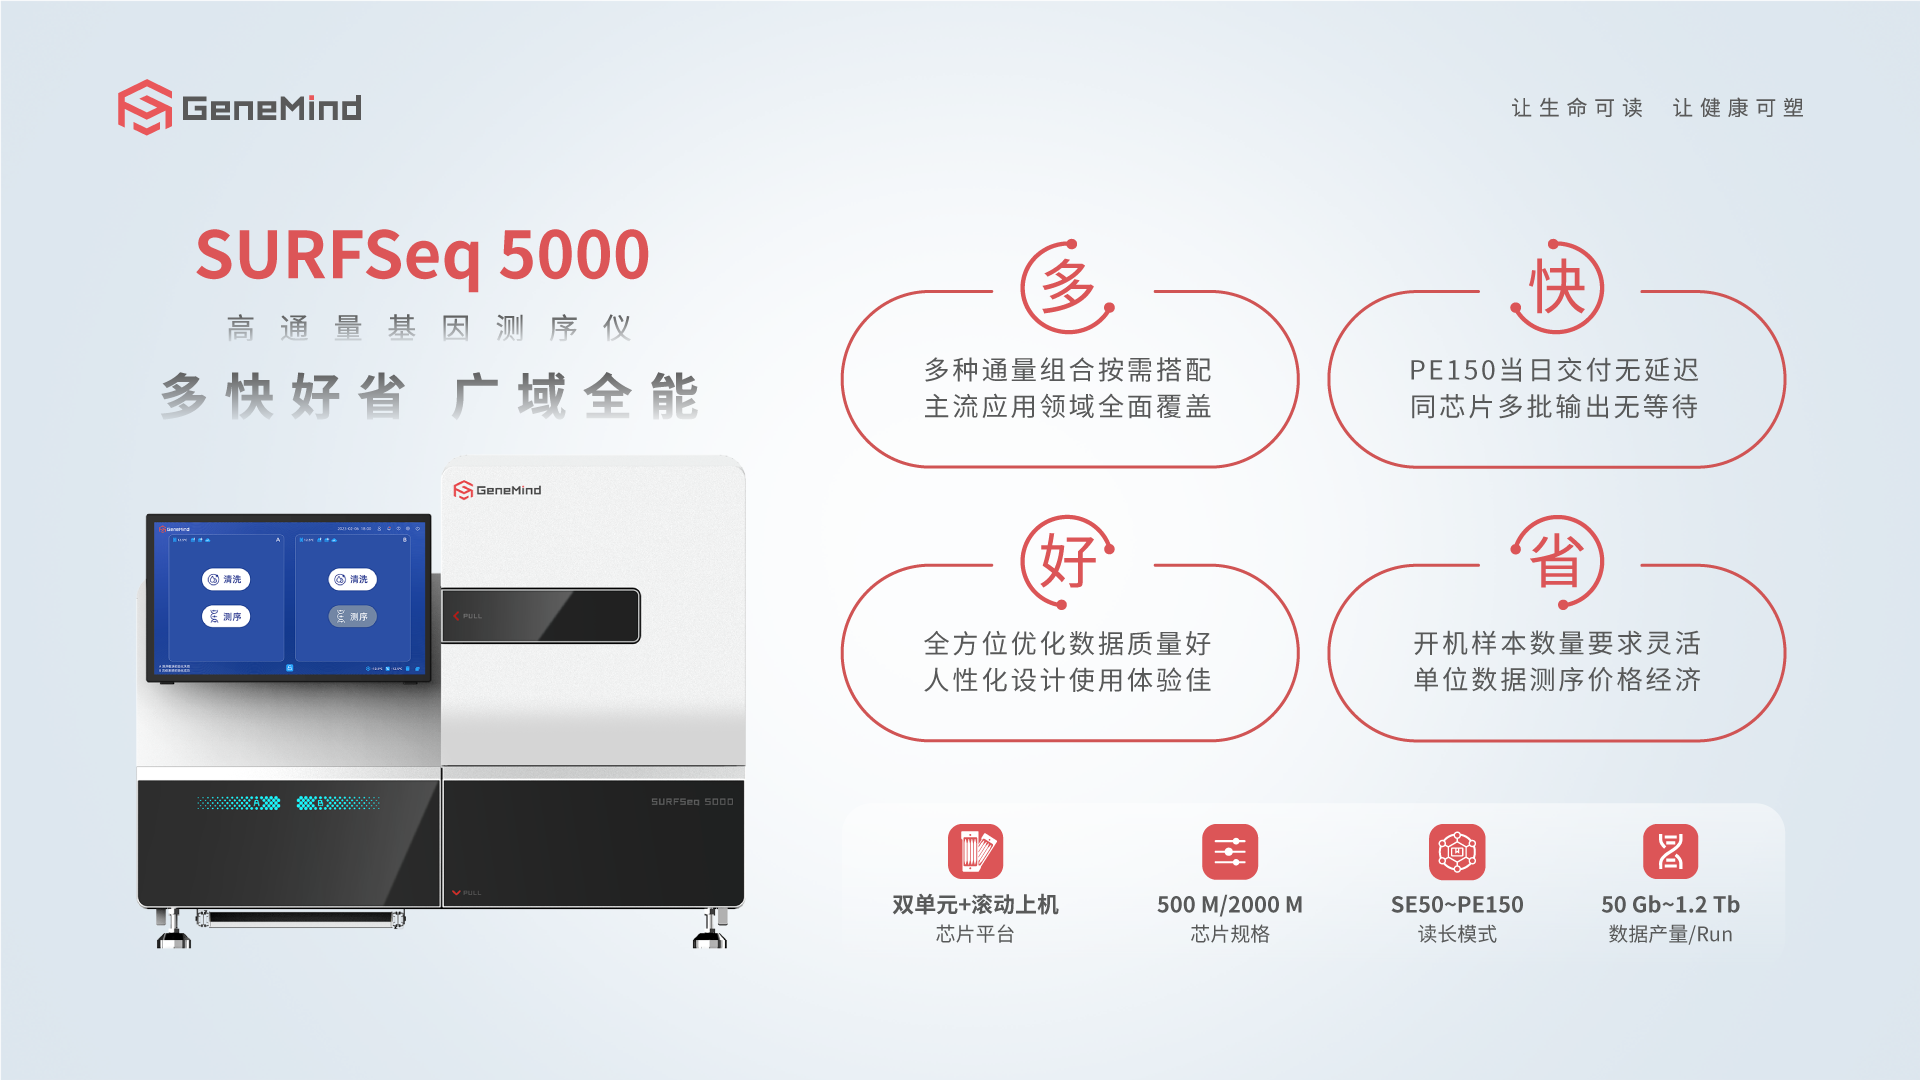 全面兼容丨真迈生物 SURFSeq 5000 在百迈客百创空间转录组学芯片兼容性测试中表现优异